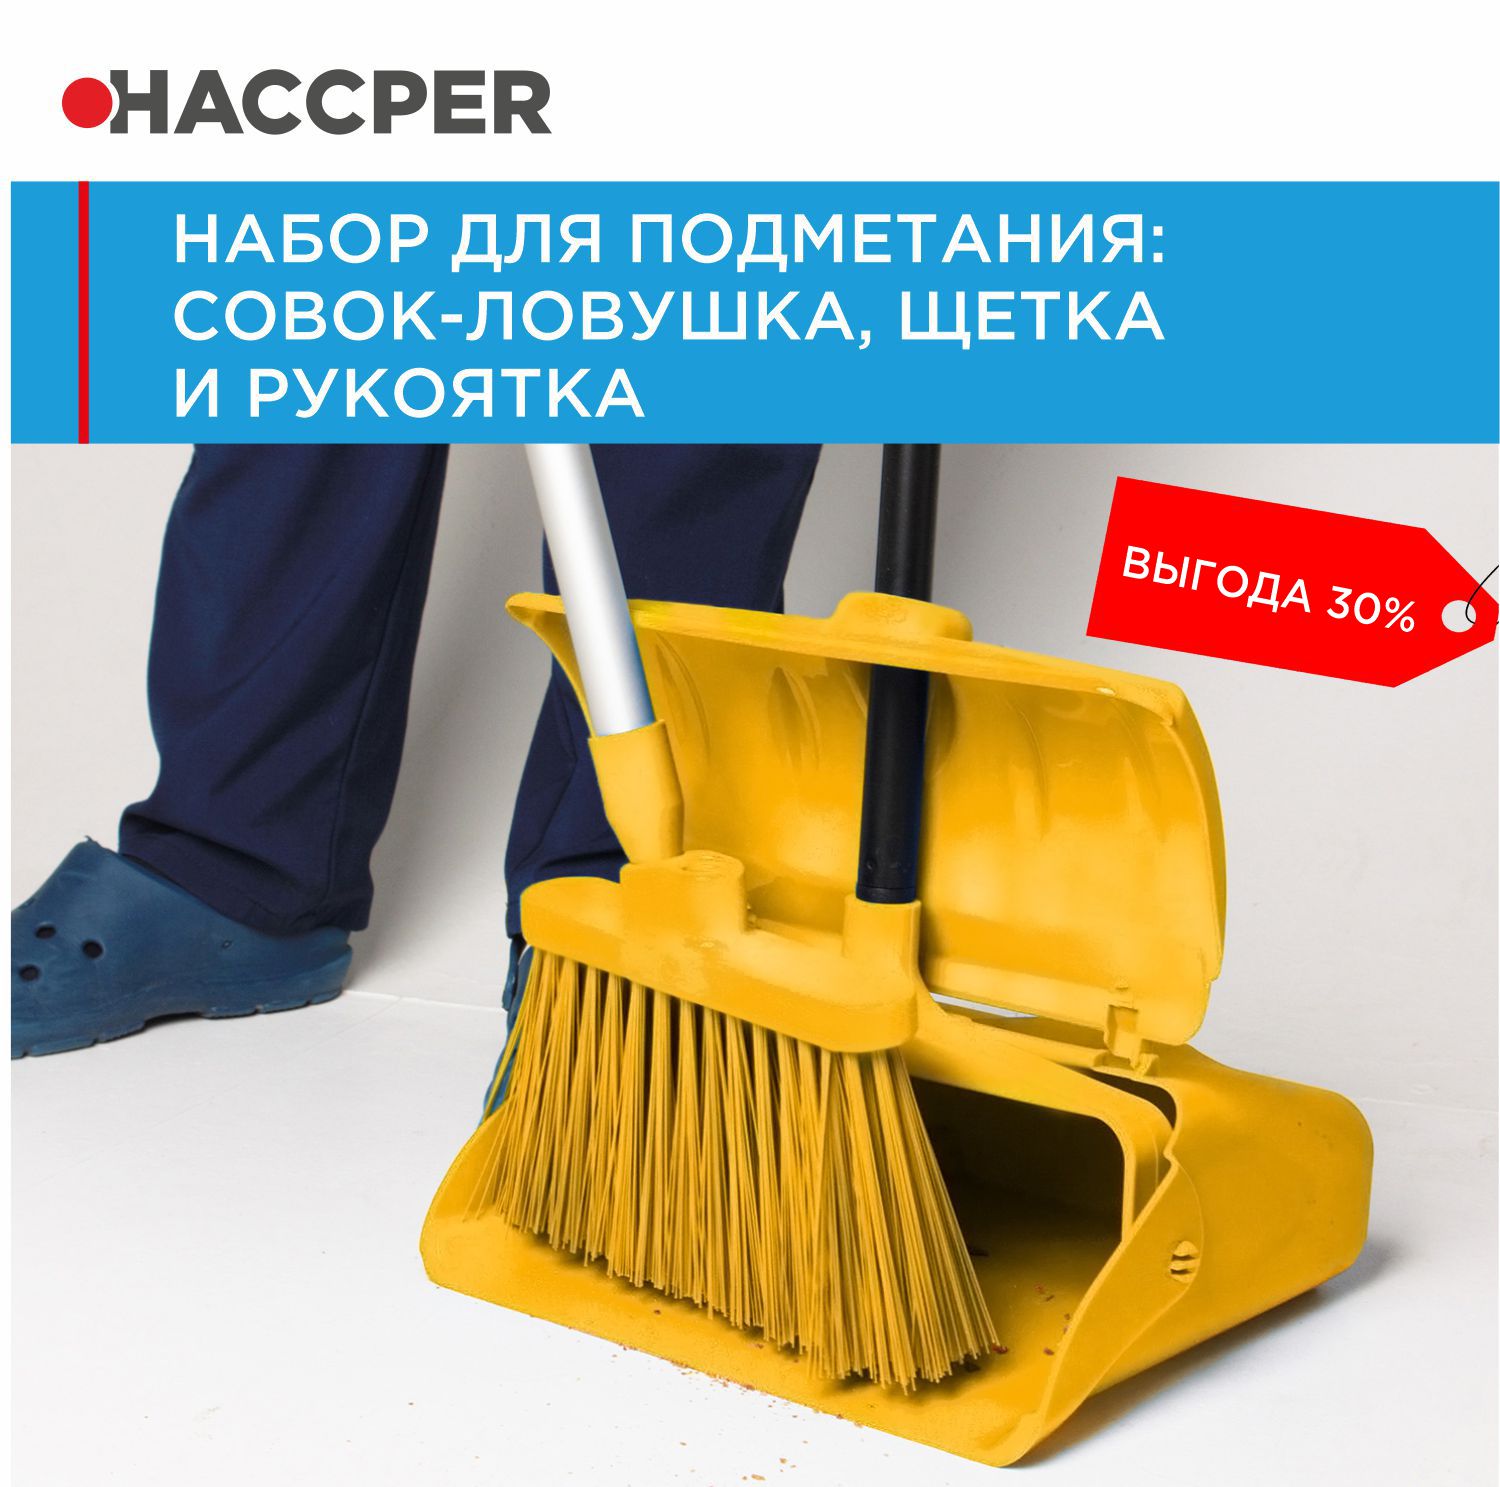 Набор для подметания HACCPER совок-ловушка, щетка и рукоятка, желтый